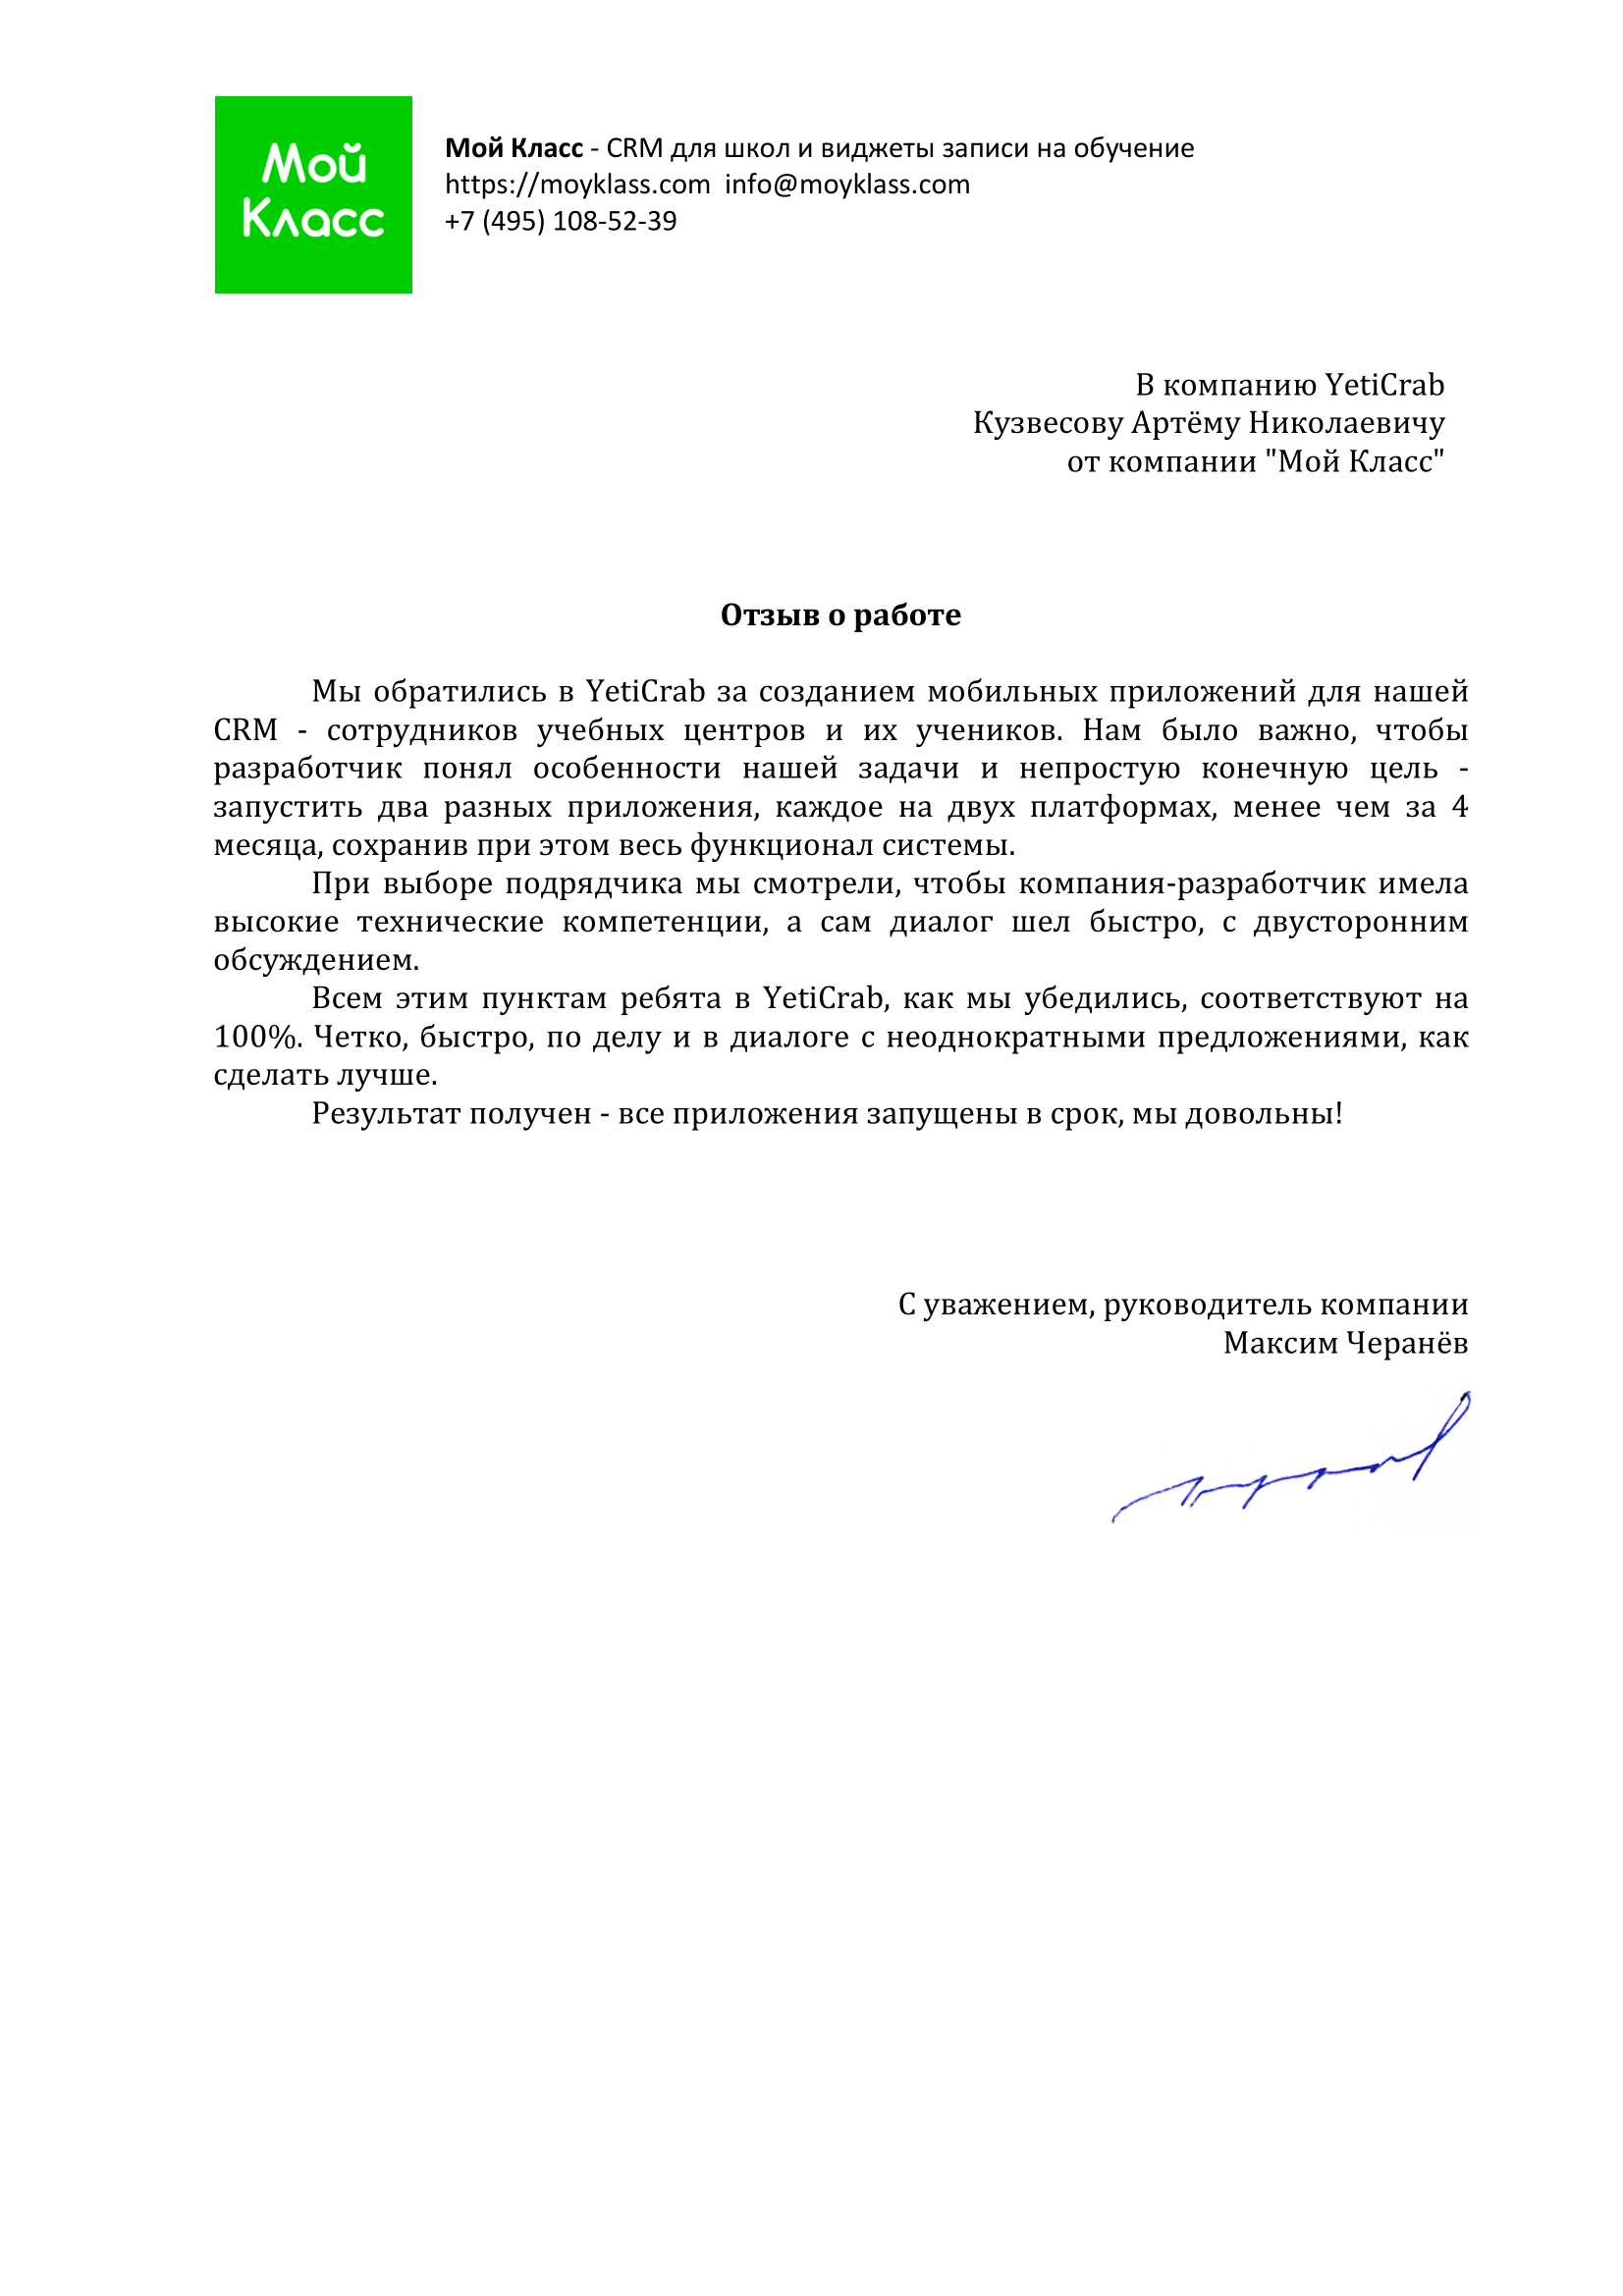 Благодарственное письмо от Мой Класс за работу YetiCrab